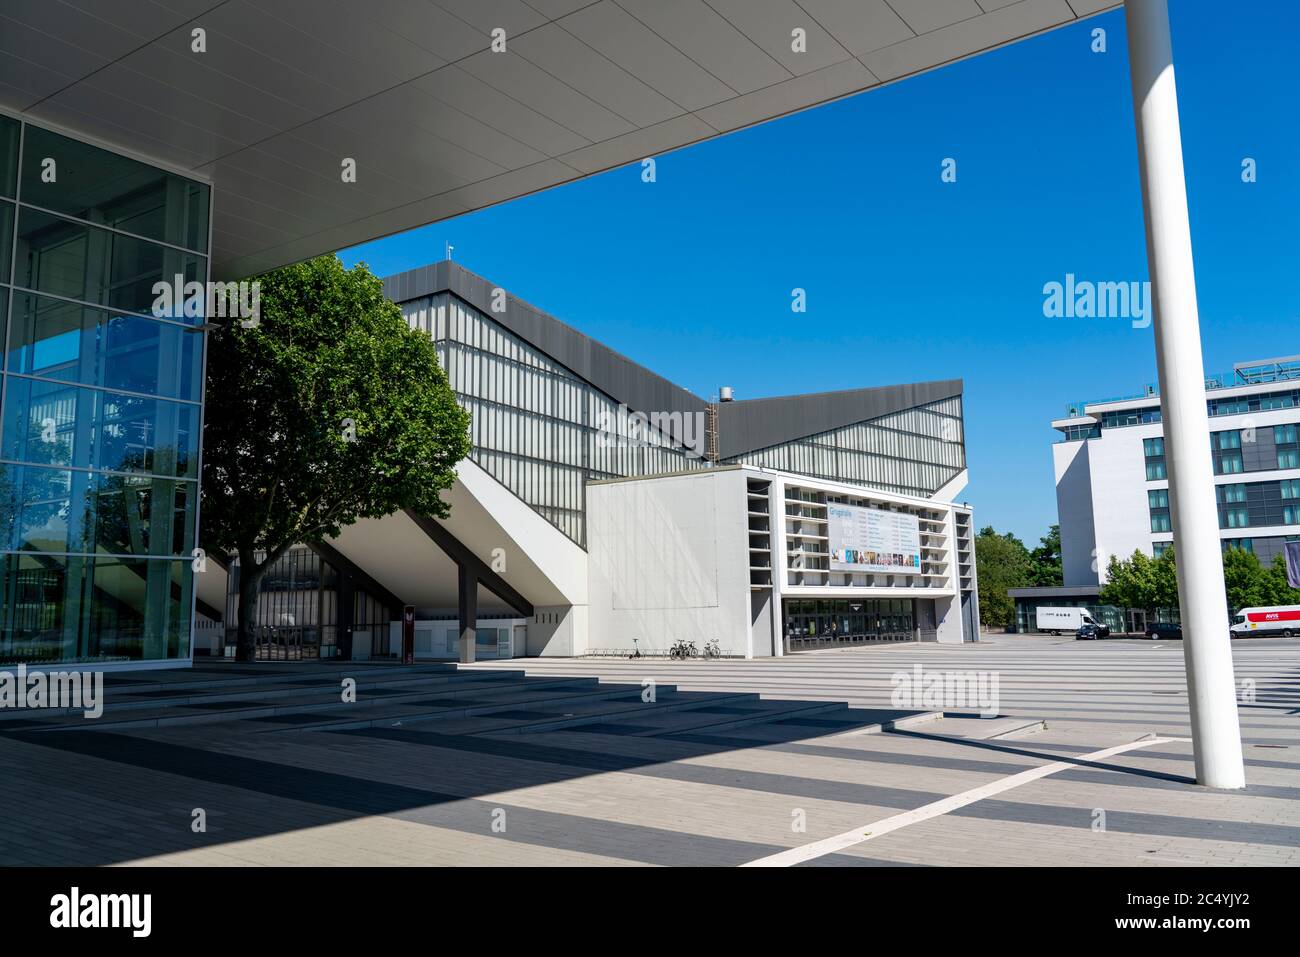 Grugahalle, plaza de nuevo diseño frente al hall y el nuevo edificio del recinto ferial Messe Essen, NRW, Alemania Foto de stock